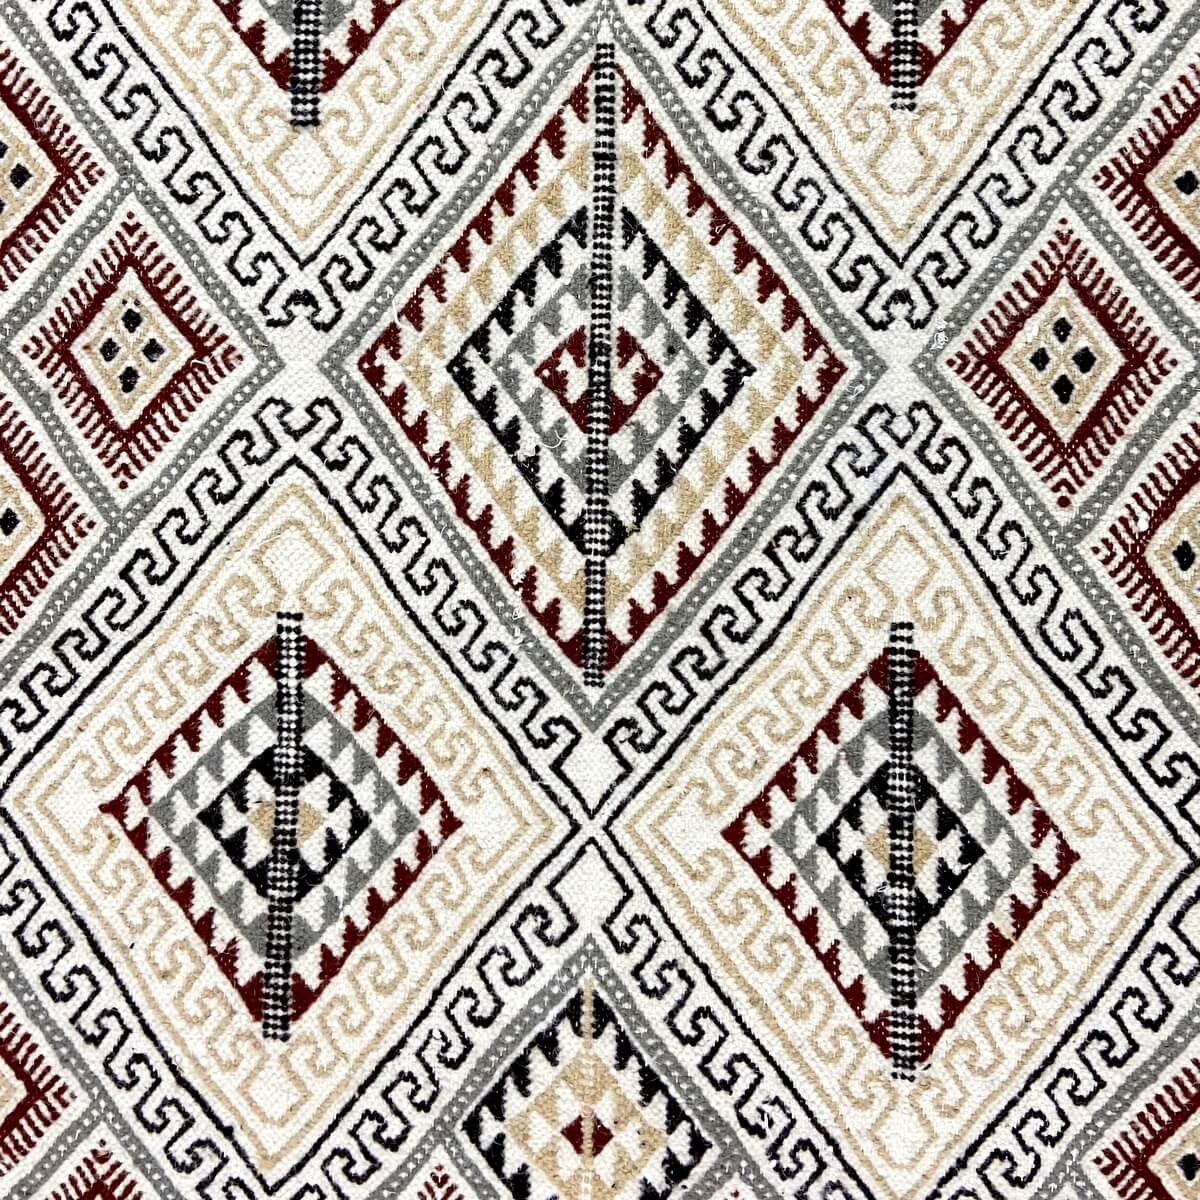 Berber tapijt Tapijt Margoum Tezbekt 128x190 Wit/Beige (Handgeweven, Wol, Tunesië) Tunesisch Margoum Tapijt uit de stad Kairouan